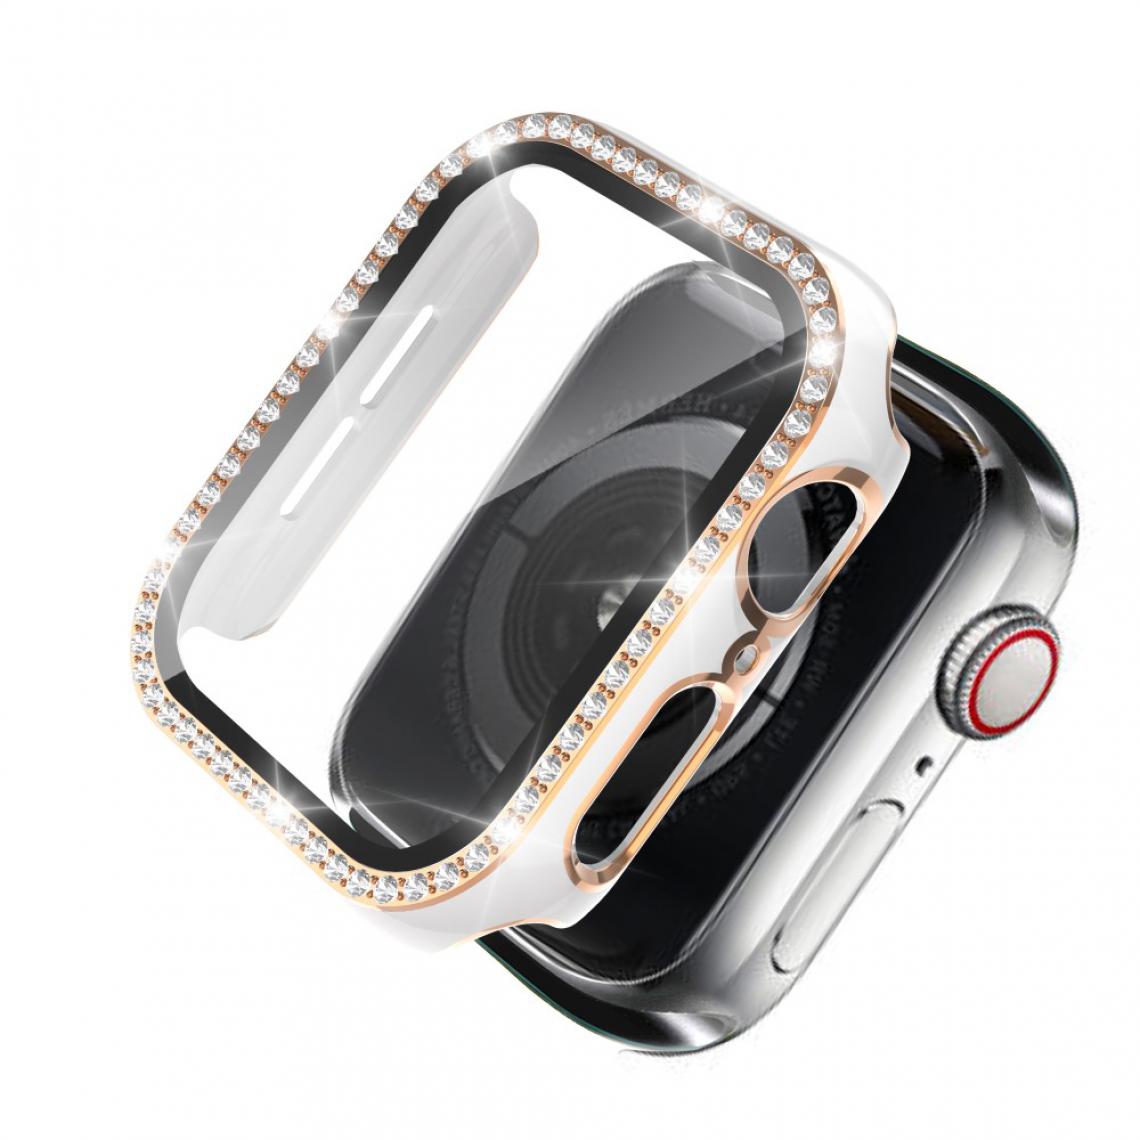 Other - Coque en TPU Cristal de galvanoplastie bicolore Blanc/Or pour votre Apple Watch 1/2/3 38mm - Accessoires bracelet connecté